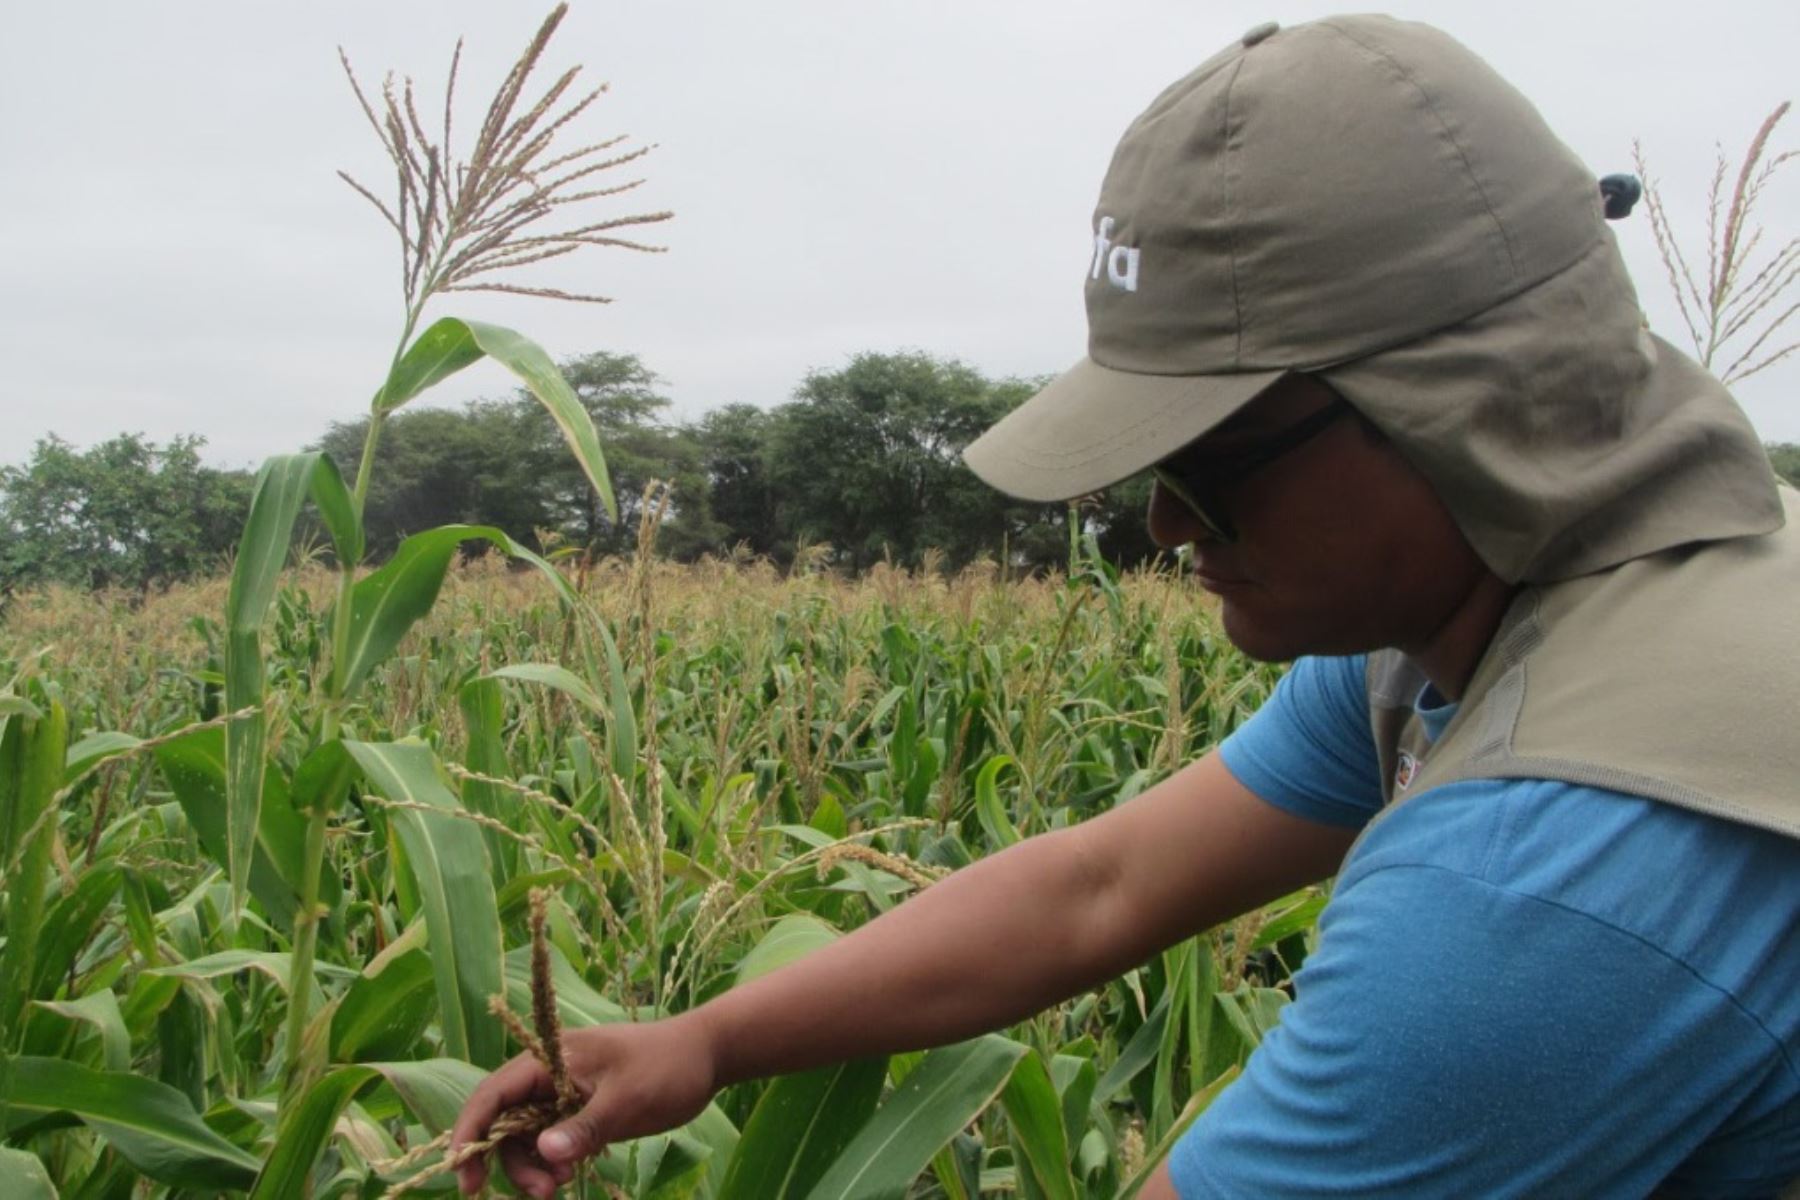 El Organismo de Evaluación y Fiscalización Ambiental (OEFA) detectó, por primera vez en el Perú, Organismos Vivos Modificados (OVM) o transgénicos en 25 campos de cultivo de maíz amarillo duro, en las regiones de Áncash y Piura.